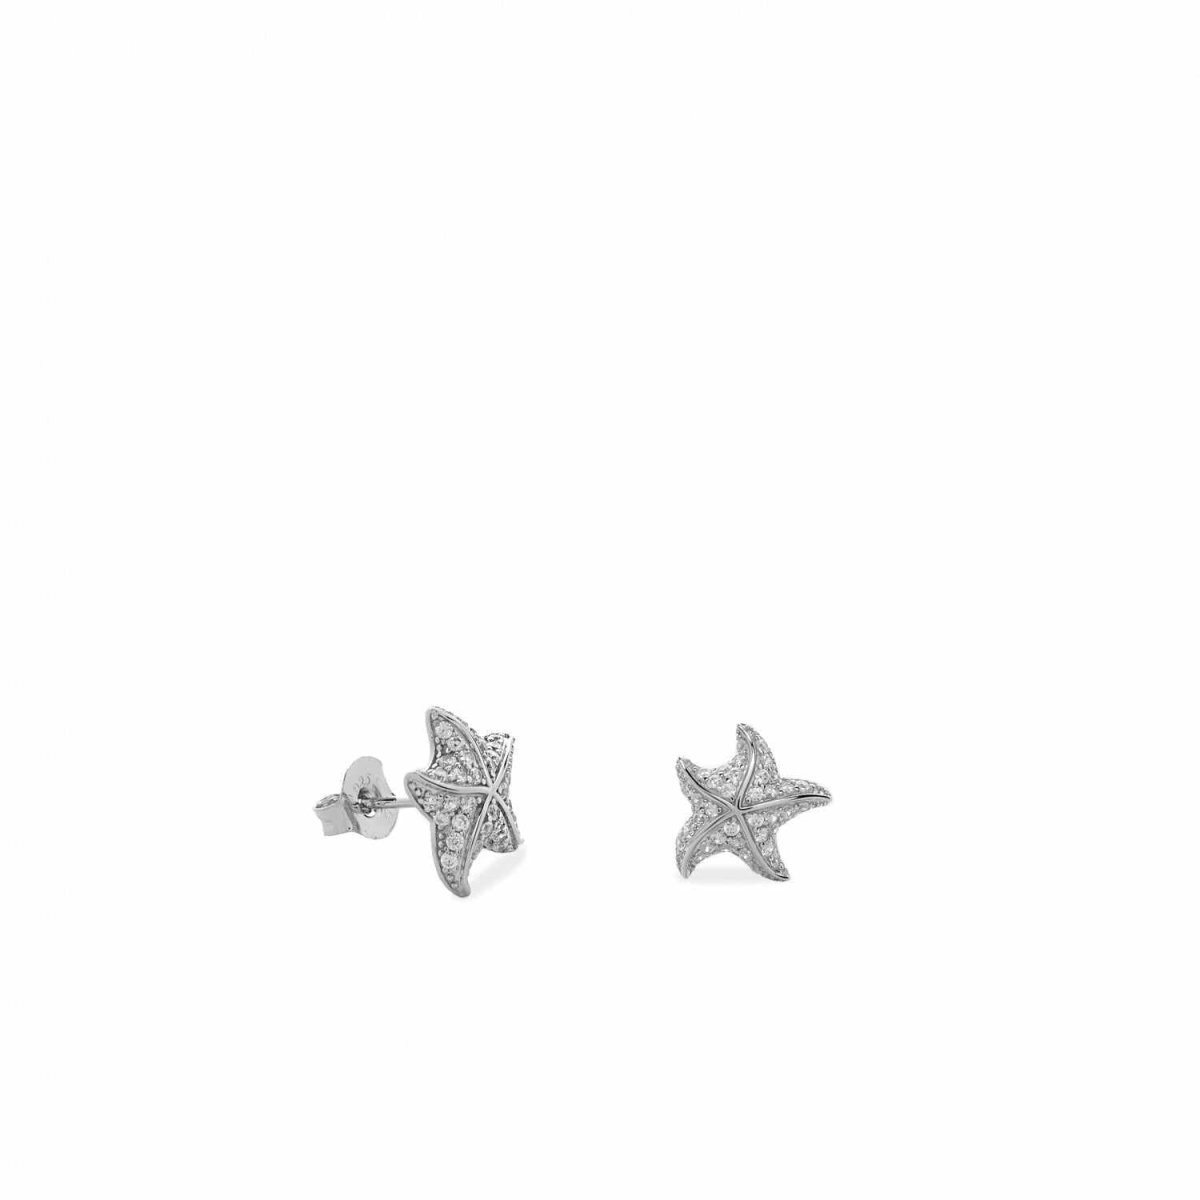 Pendiente · Pendientes pequeños de plata diseño estrella de mar con circonitas